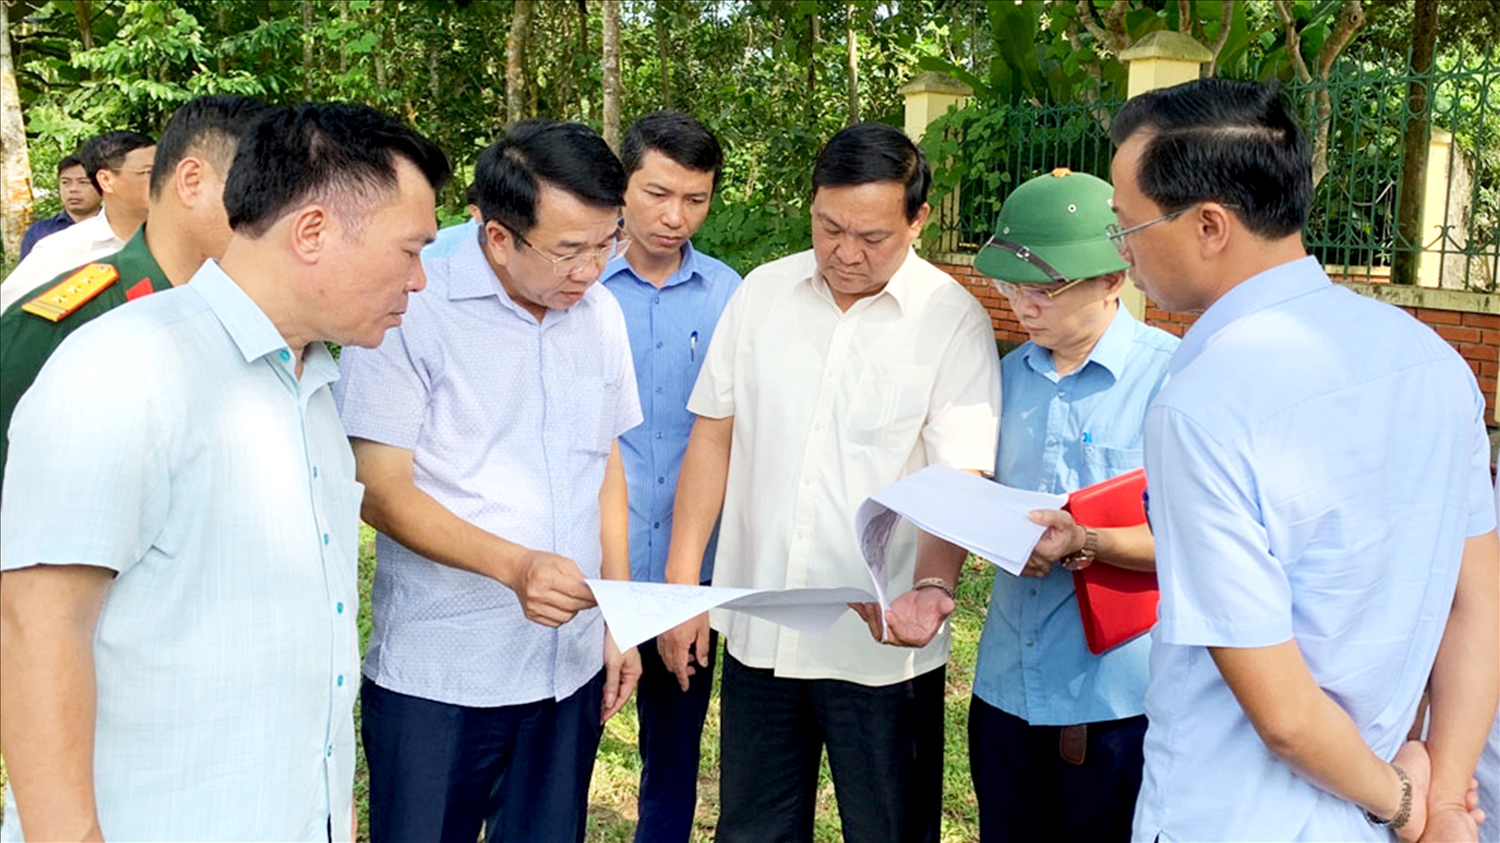 Đoàn công tác kiểm tra thực tế công tác quy hoạch tại xã Phú Đình, huyện Định Hóa, tỉnh Thái Nguyên - ảnh: Việt Dũng